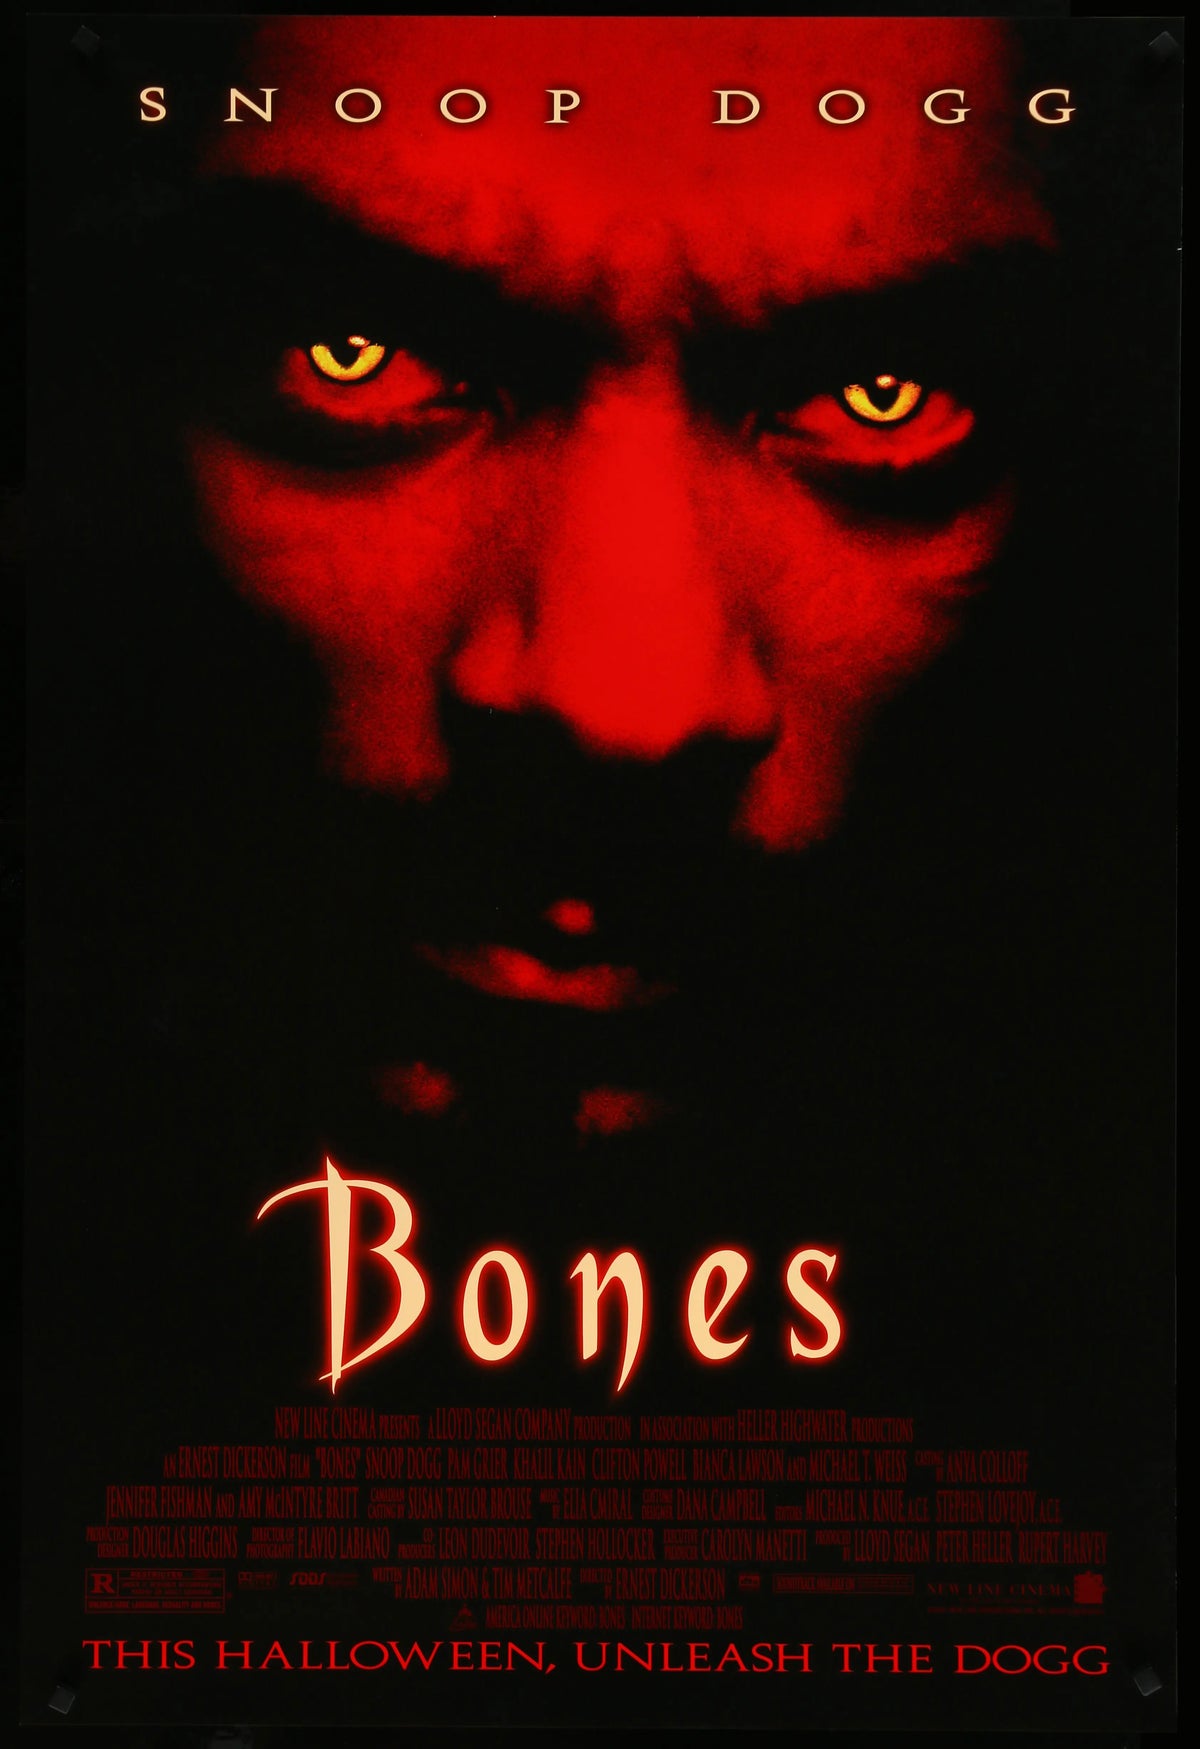 Bones (2001) original movie poster for sale at Original Film Art